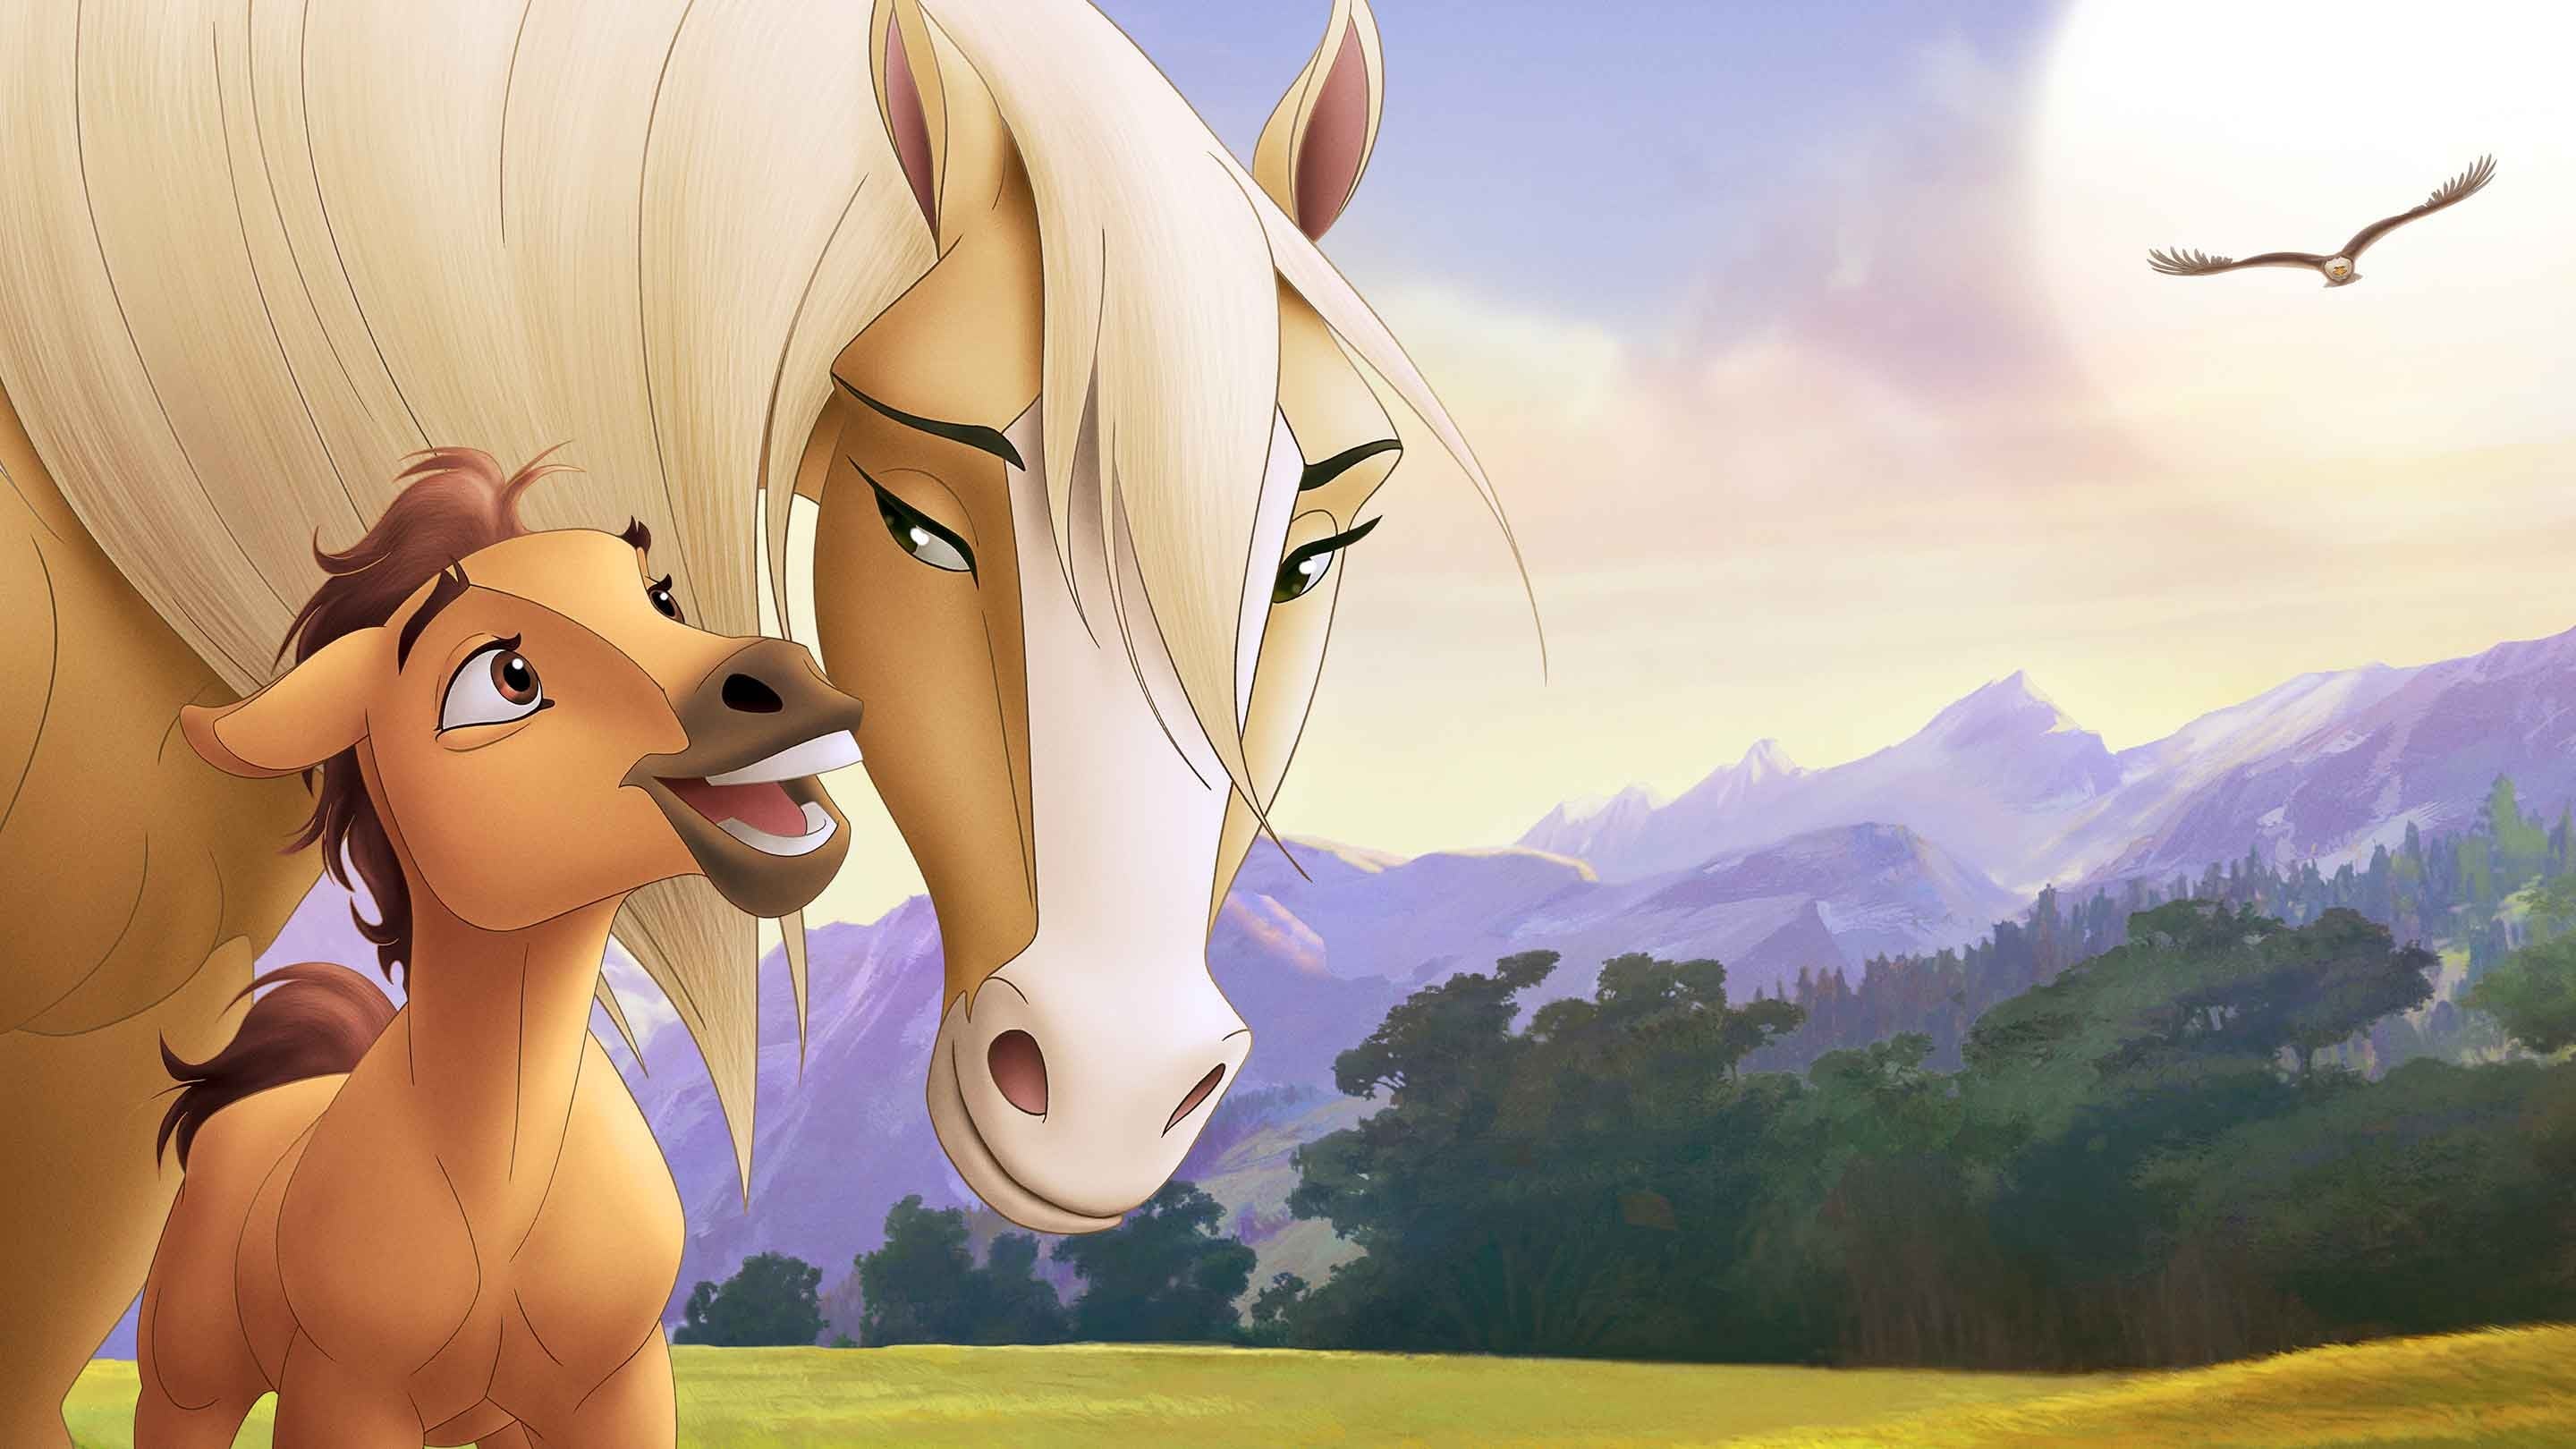 Spirit: Hästen från vildmarken (2002)